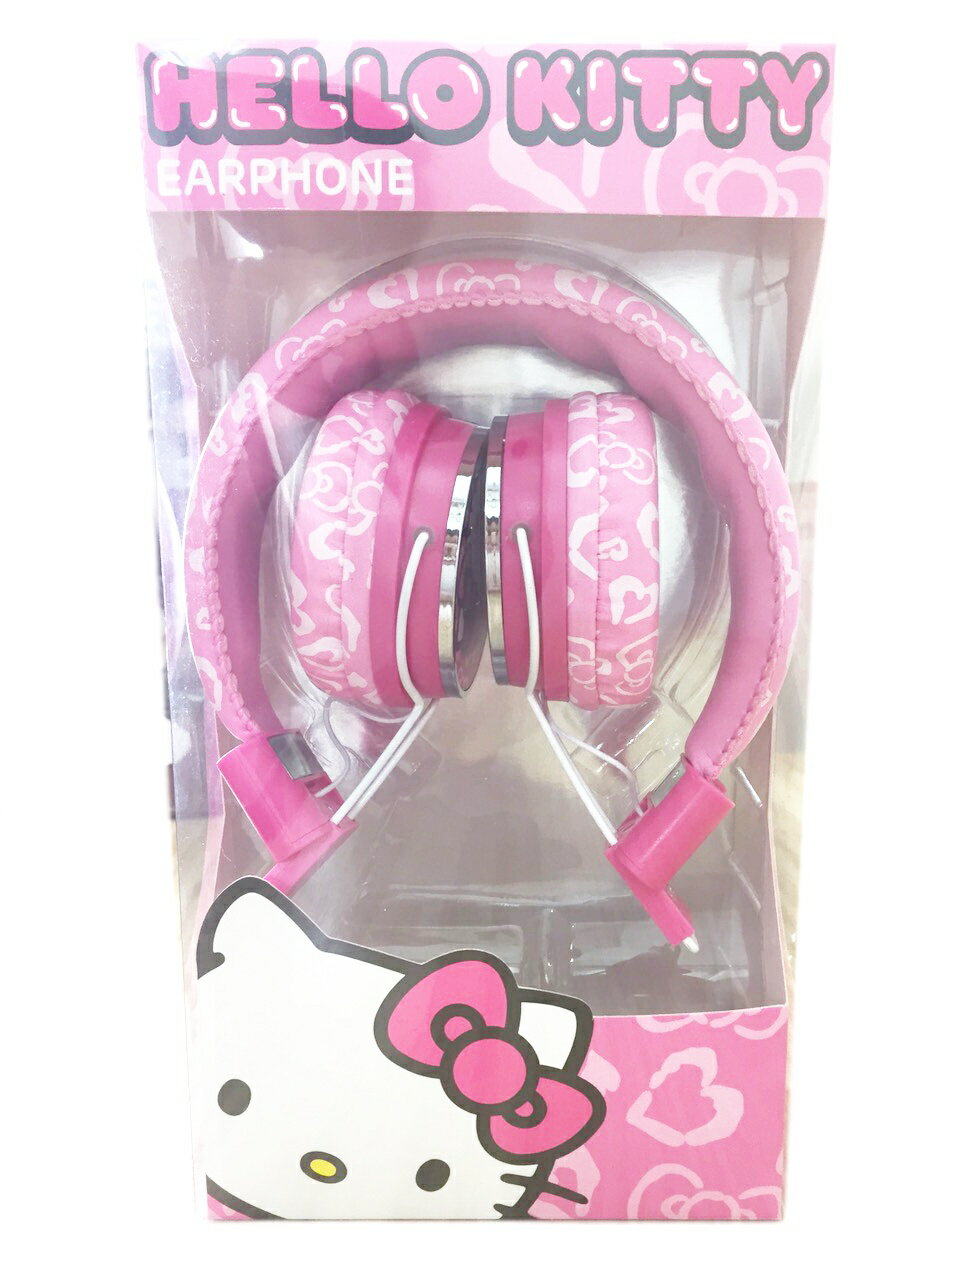 【真愛日本】15052300004 全罩式耳機-KT愛心粉 三麗鷗 Hello Kitty 凱蒂貓 電腦周邊 正品 限量 預購  